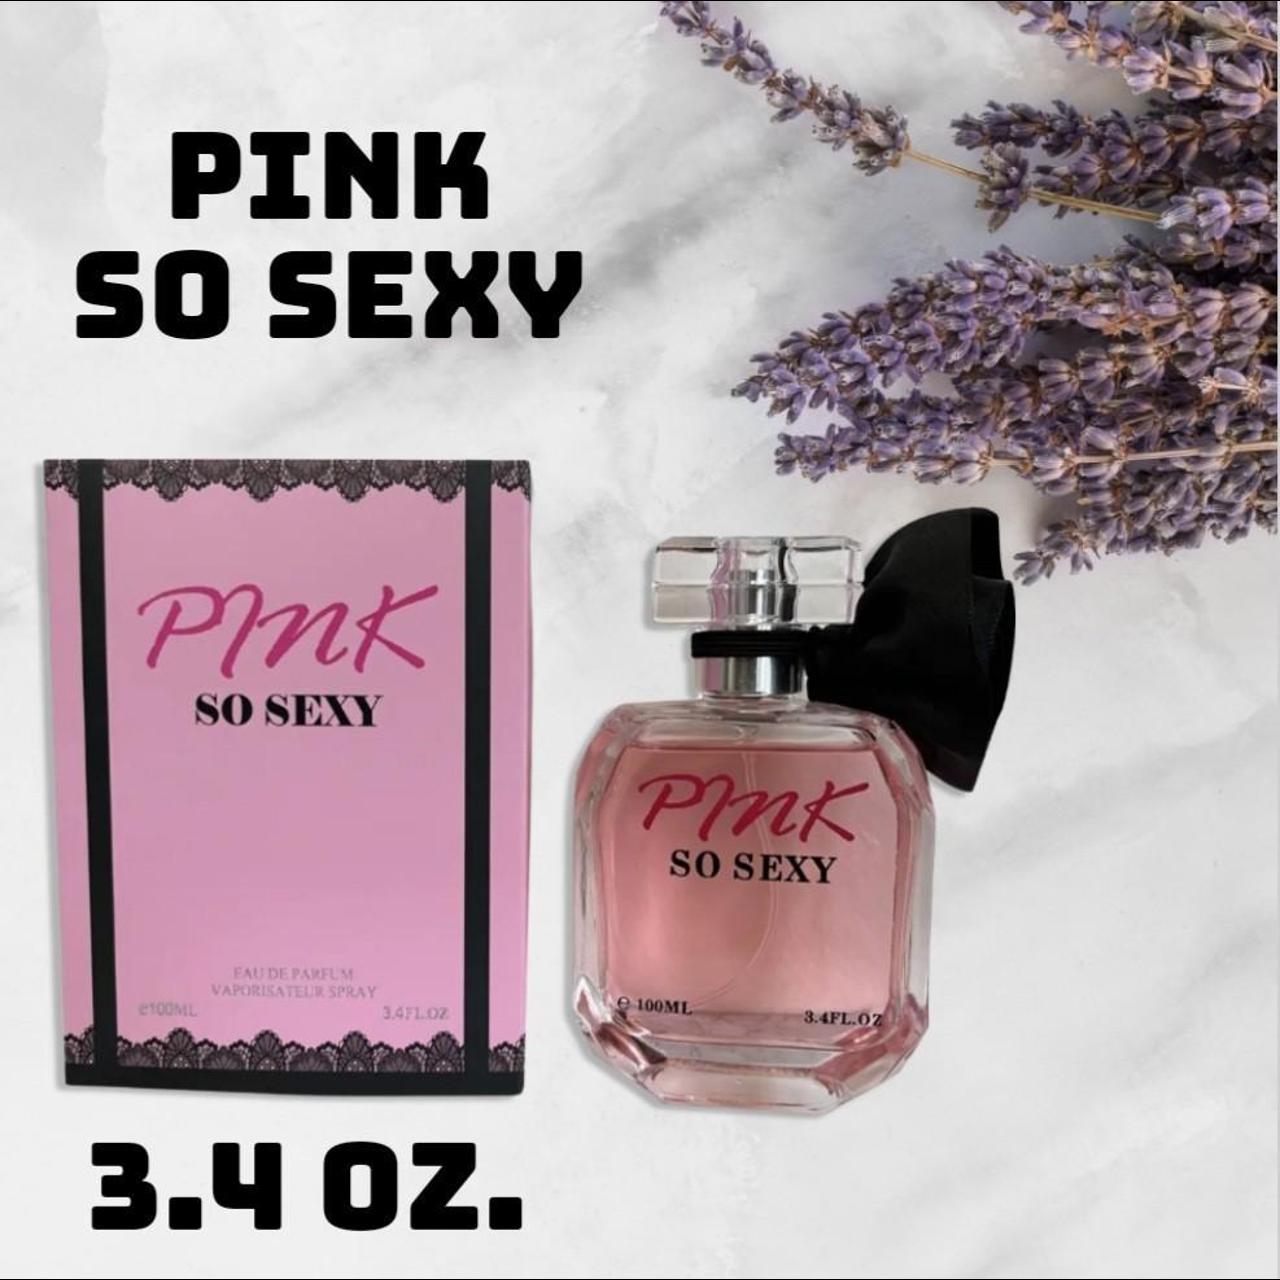 PINK SO SEXY for WOMEN EAU DE PARFUM TOILETTE PERFUME 3.4 OZ